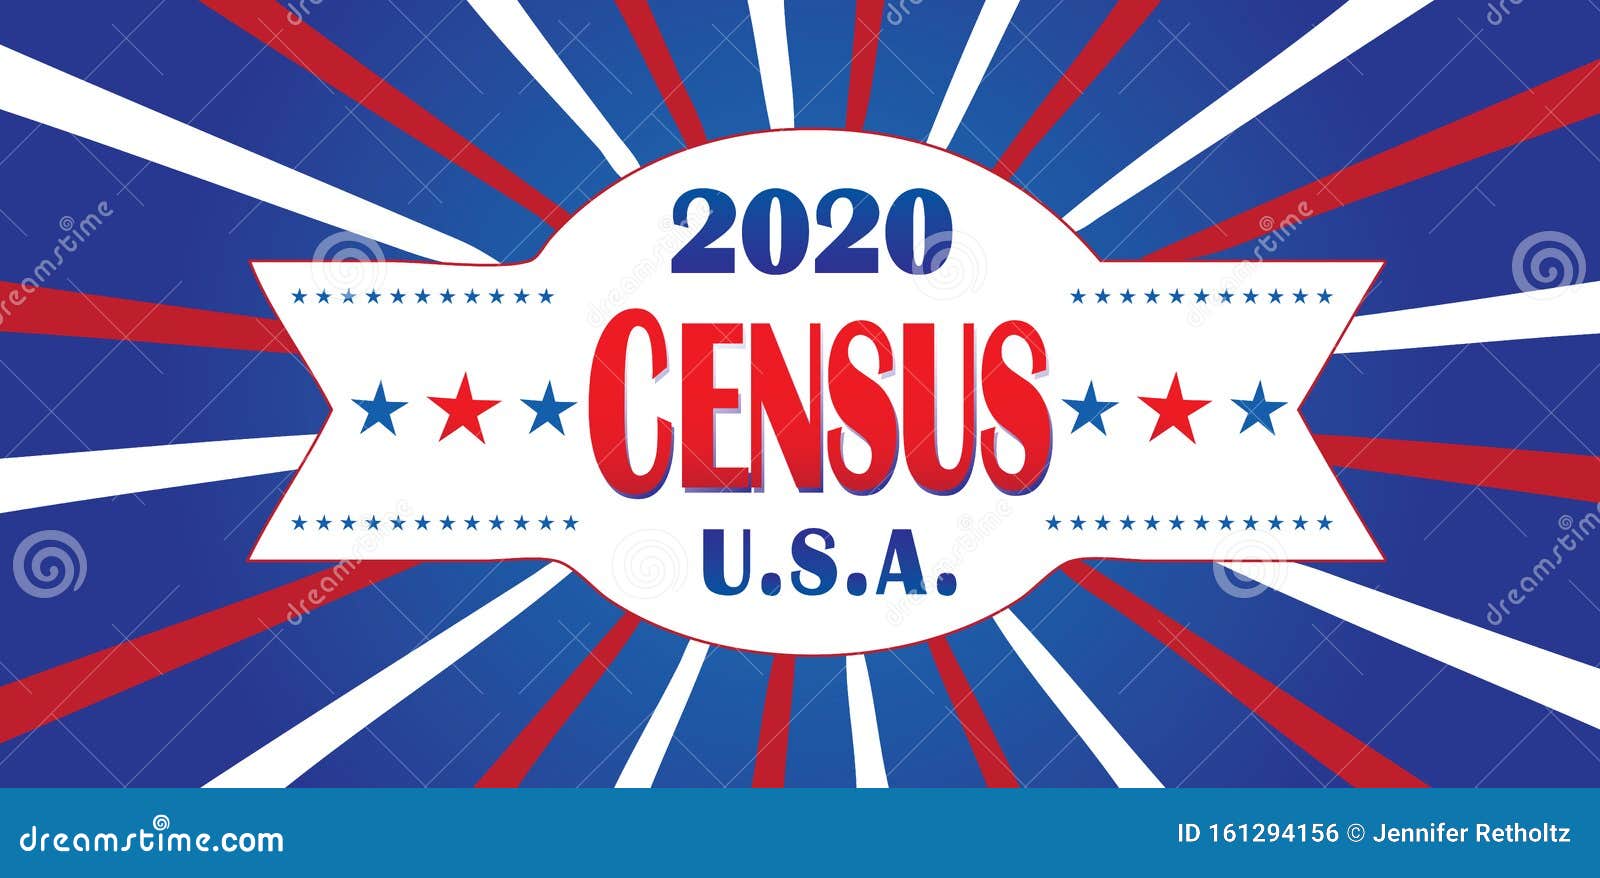 2020 census banner starburst